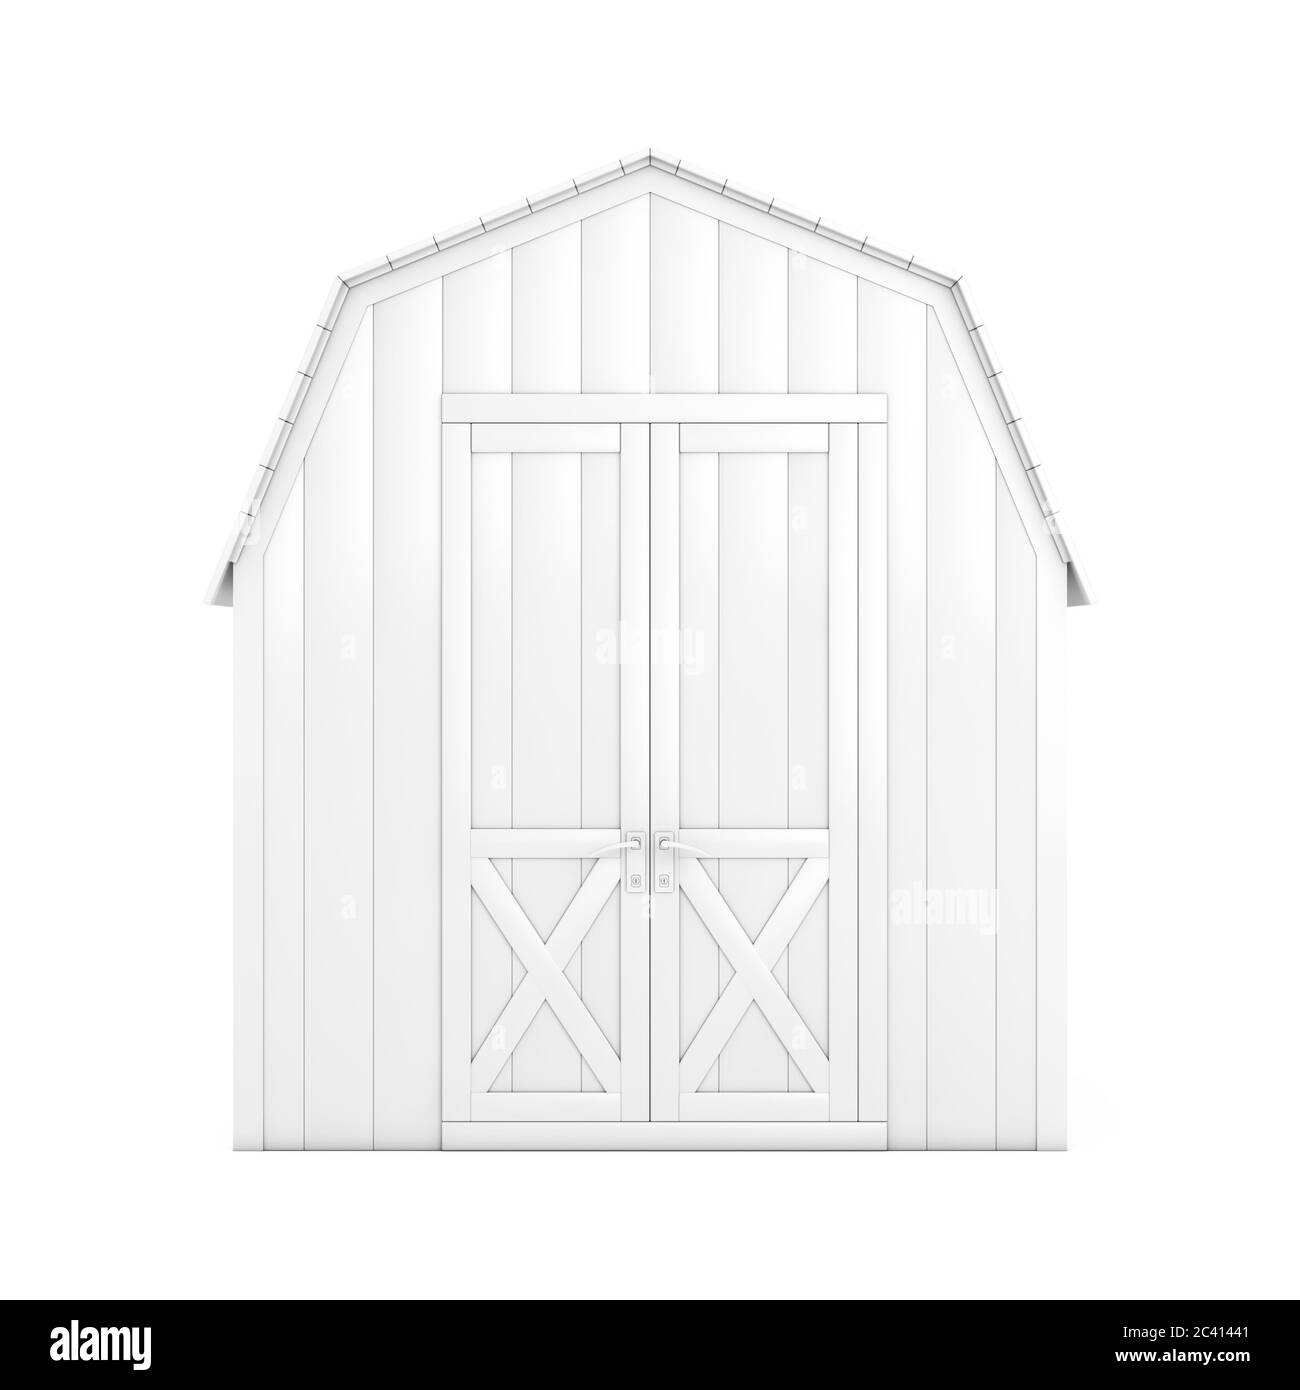 Weißes Holz kleines Haus Hütte Lagerschuppen für Gartengeräte in Ton-Stil  auf weißem Hintergrund. 3d-Rendering Stockfotografie - Alamy